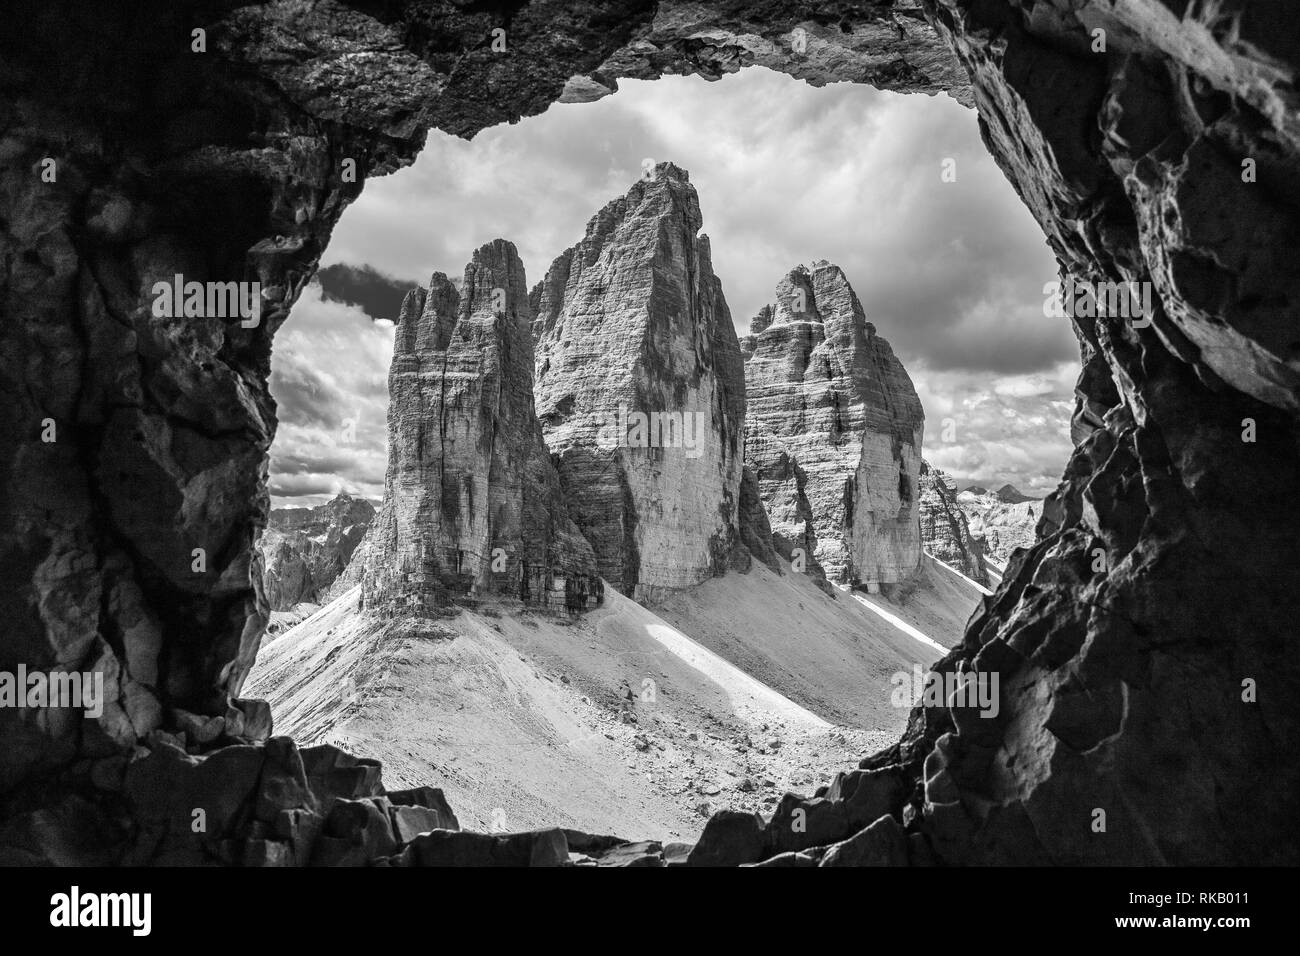 Le Tre Cime di Lavaredo picchi di montagna in tre cime Nature Park. Vista da una galleria di guerra del Monte Paterno. Le Dolomiti. L'Italia. L'Europa. Foto Stock